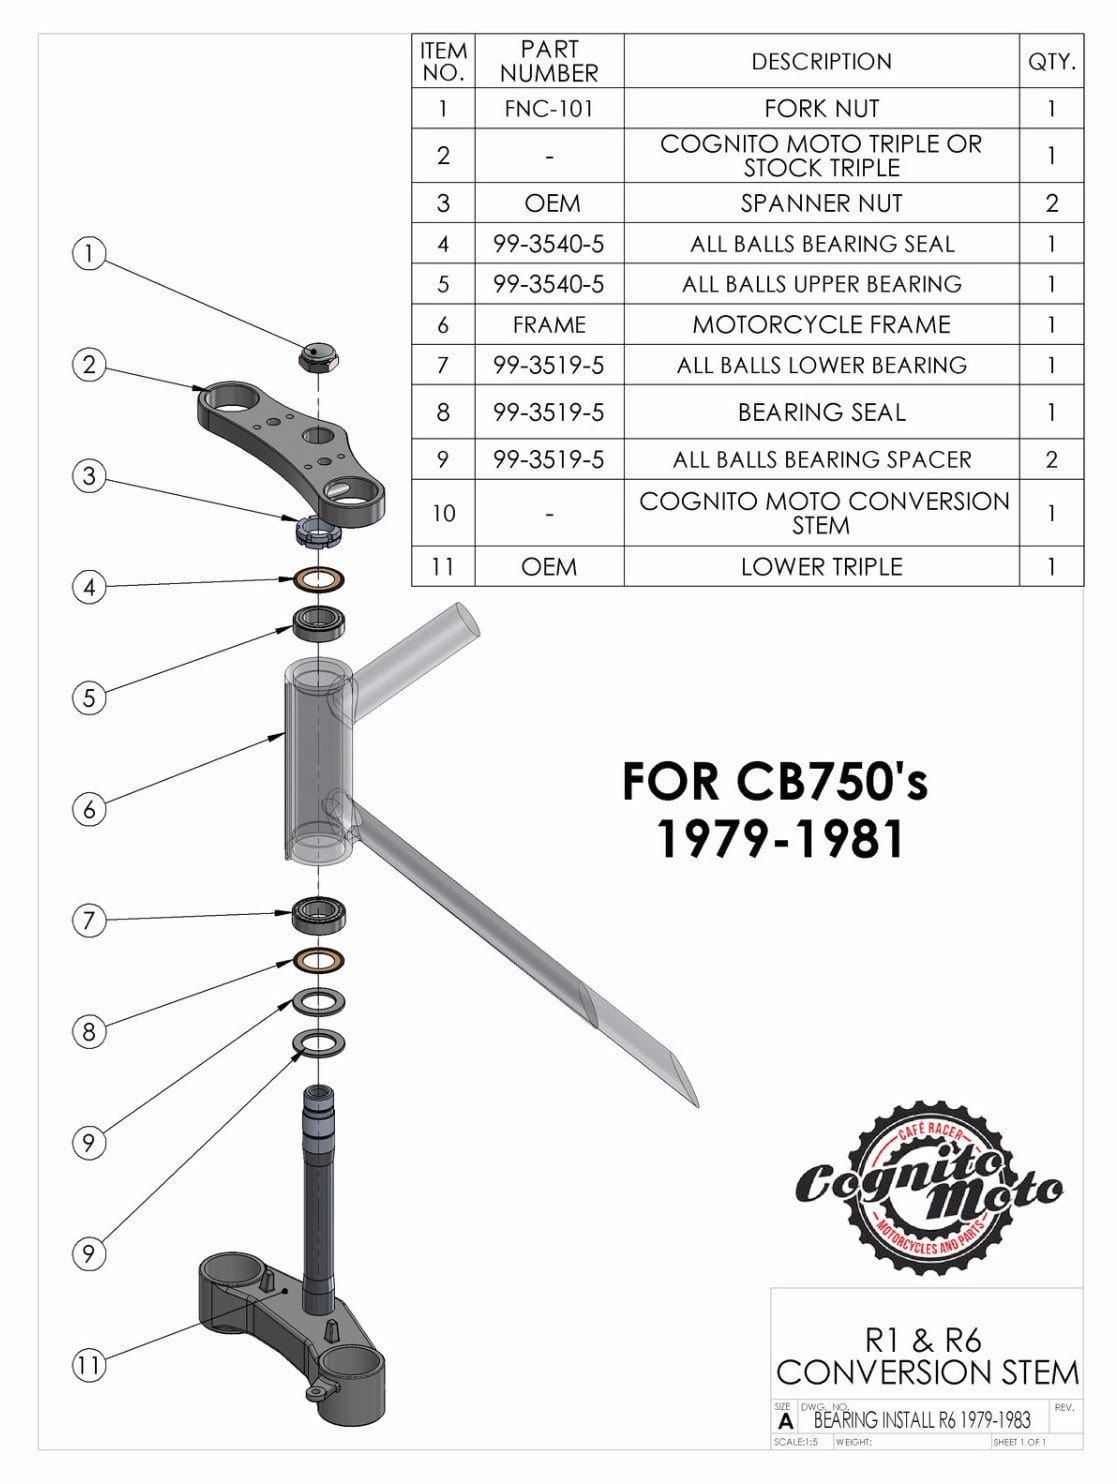 Yamaha R6/R1 Fork on CB750 Frame Conversion Stem